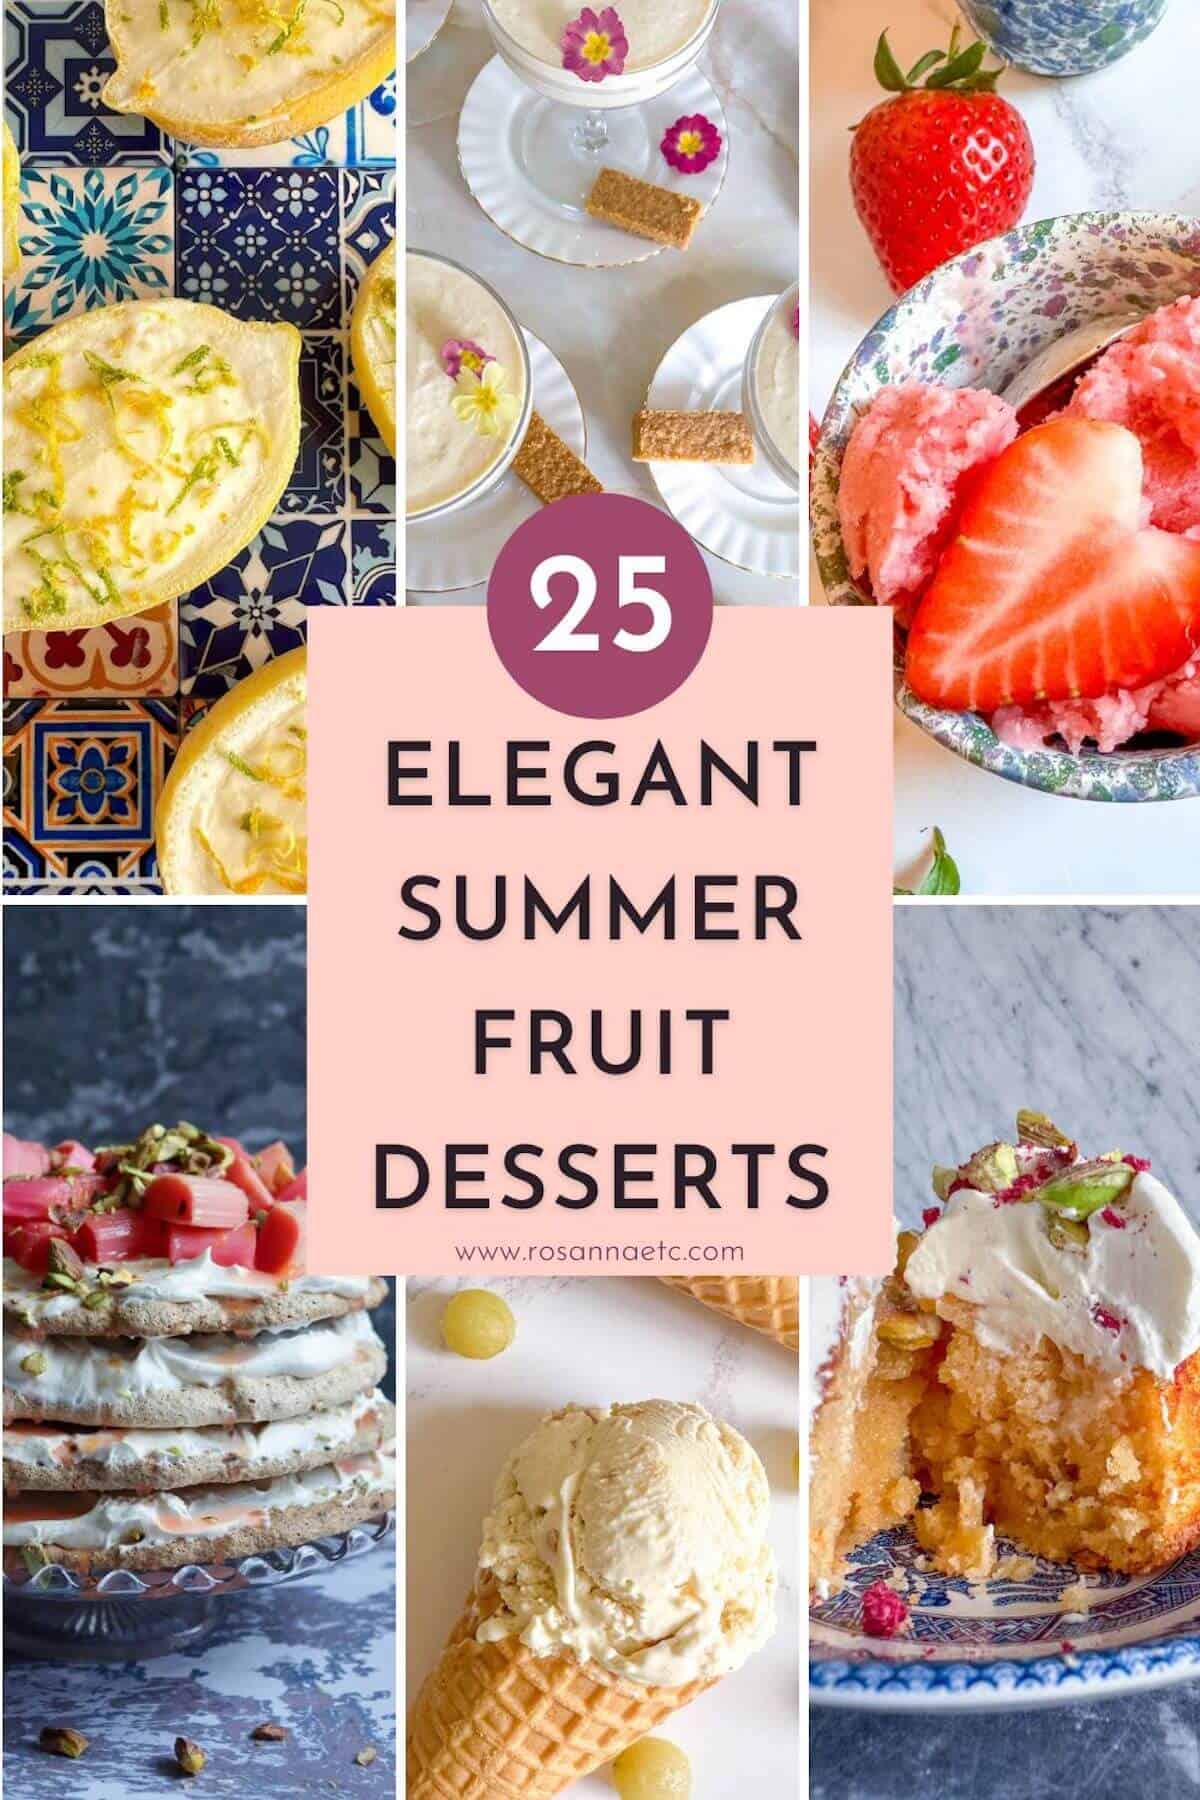 Elegant summer fruit desserts collage. 